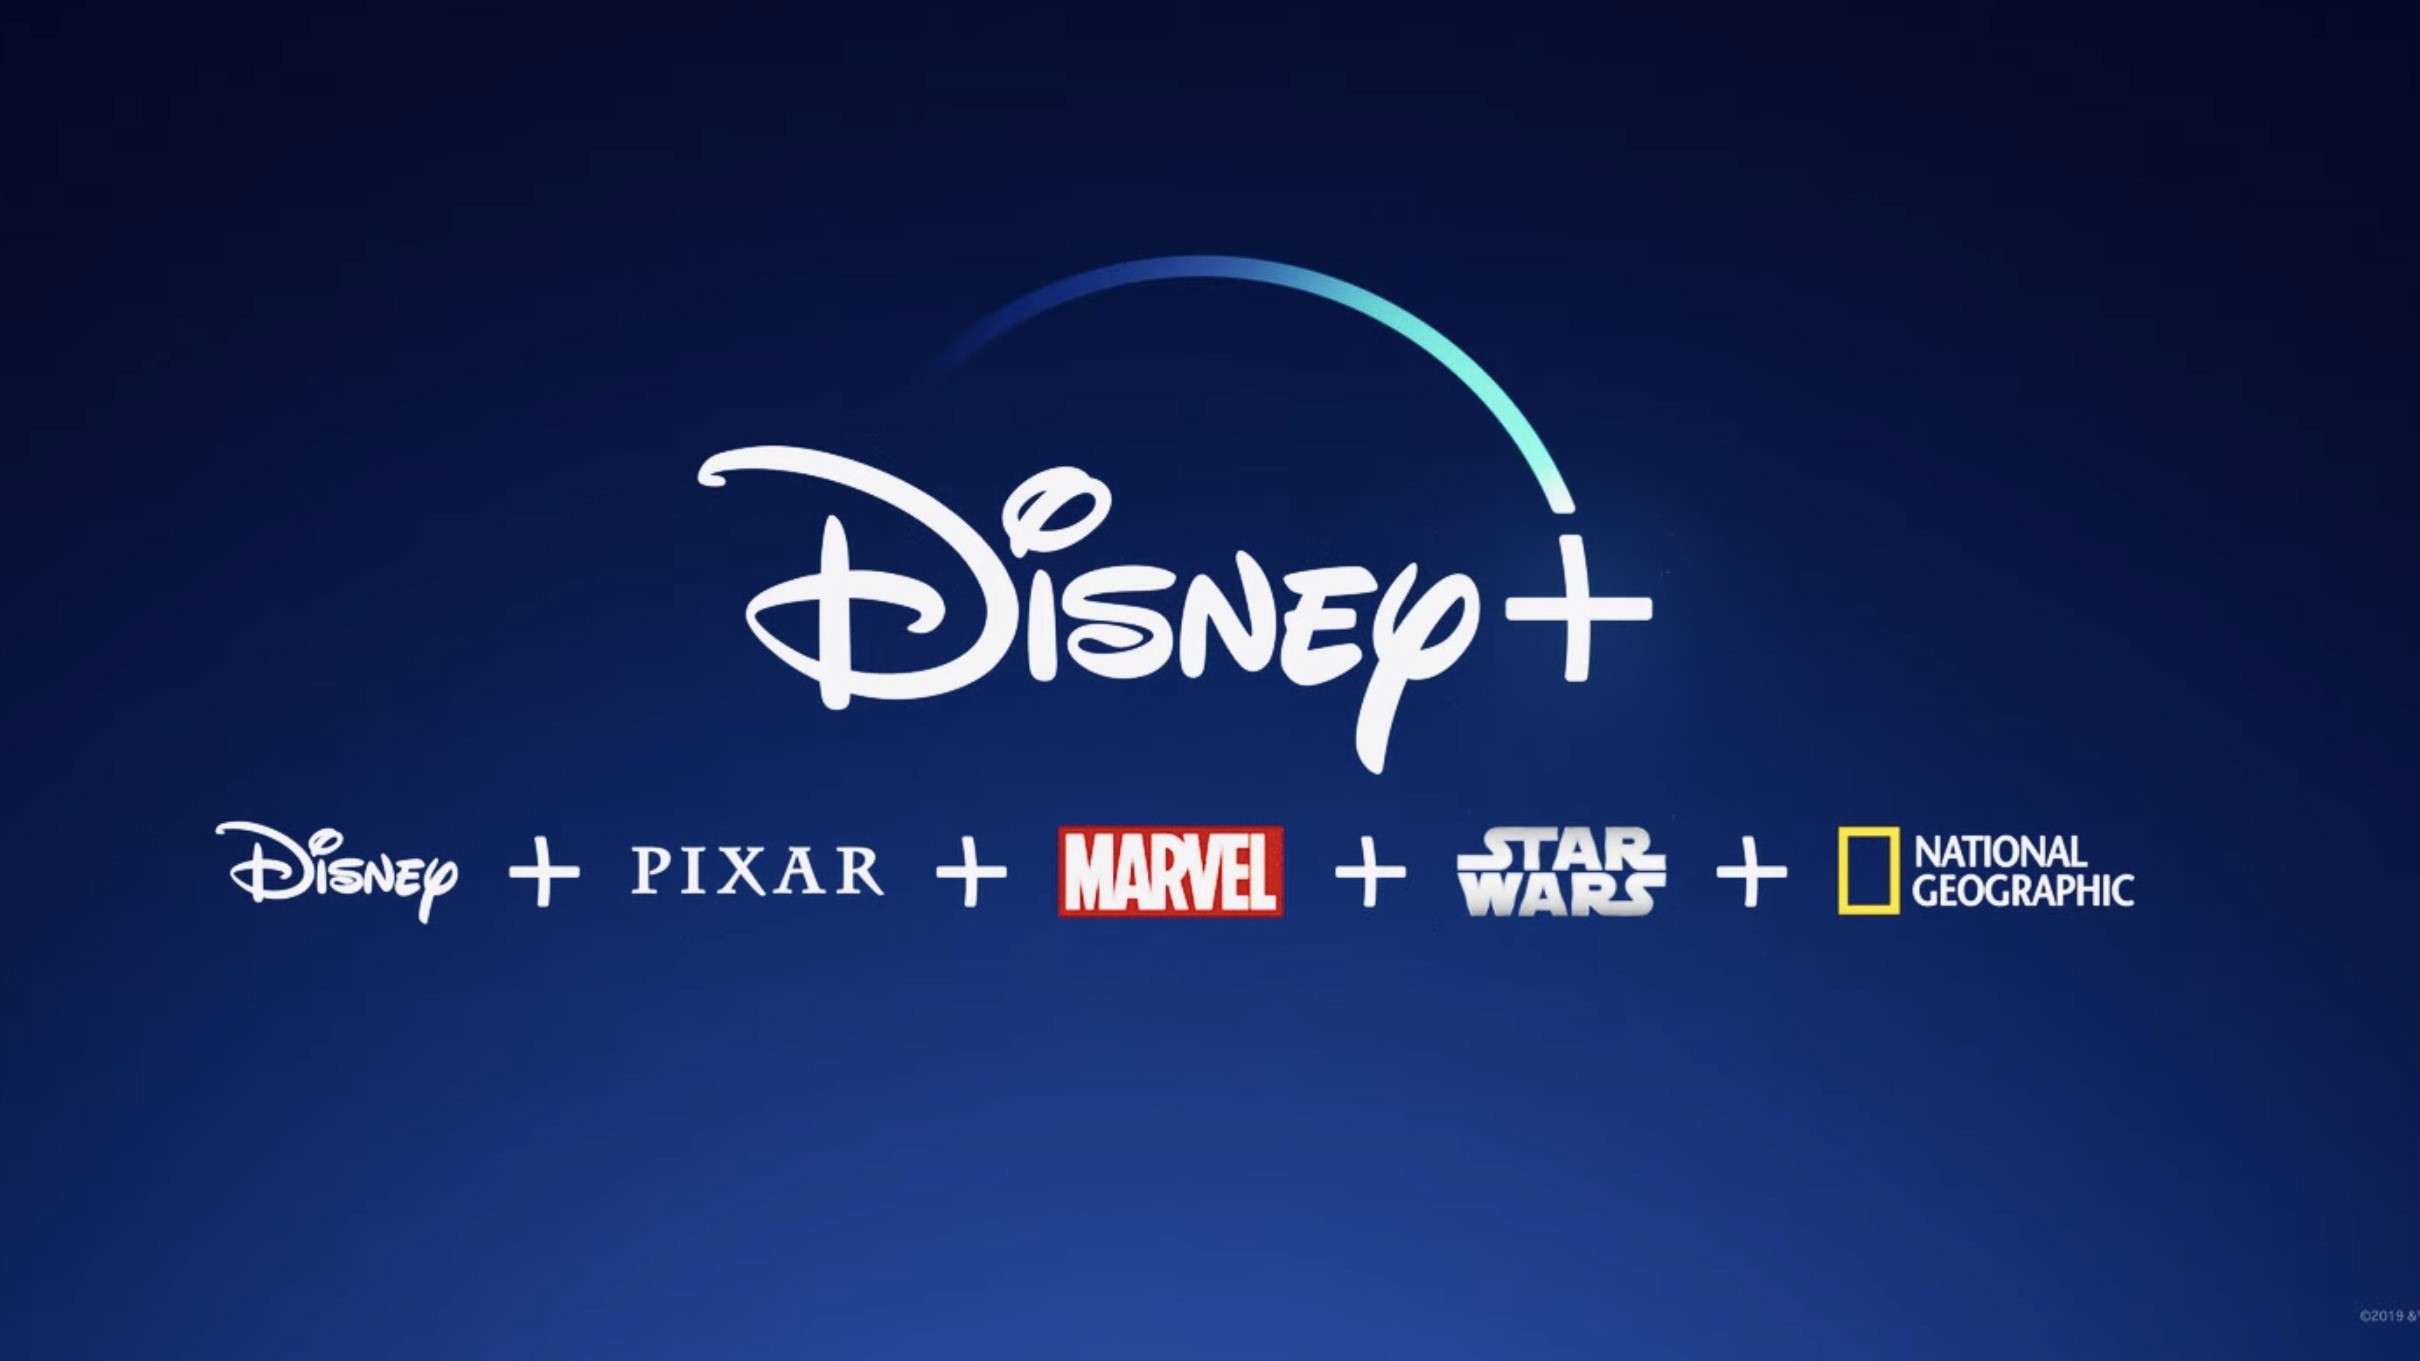 خدمة Disney+ والشركات التابعة لها !